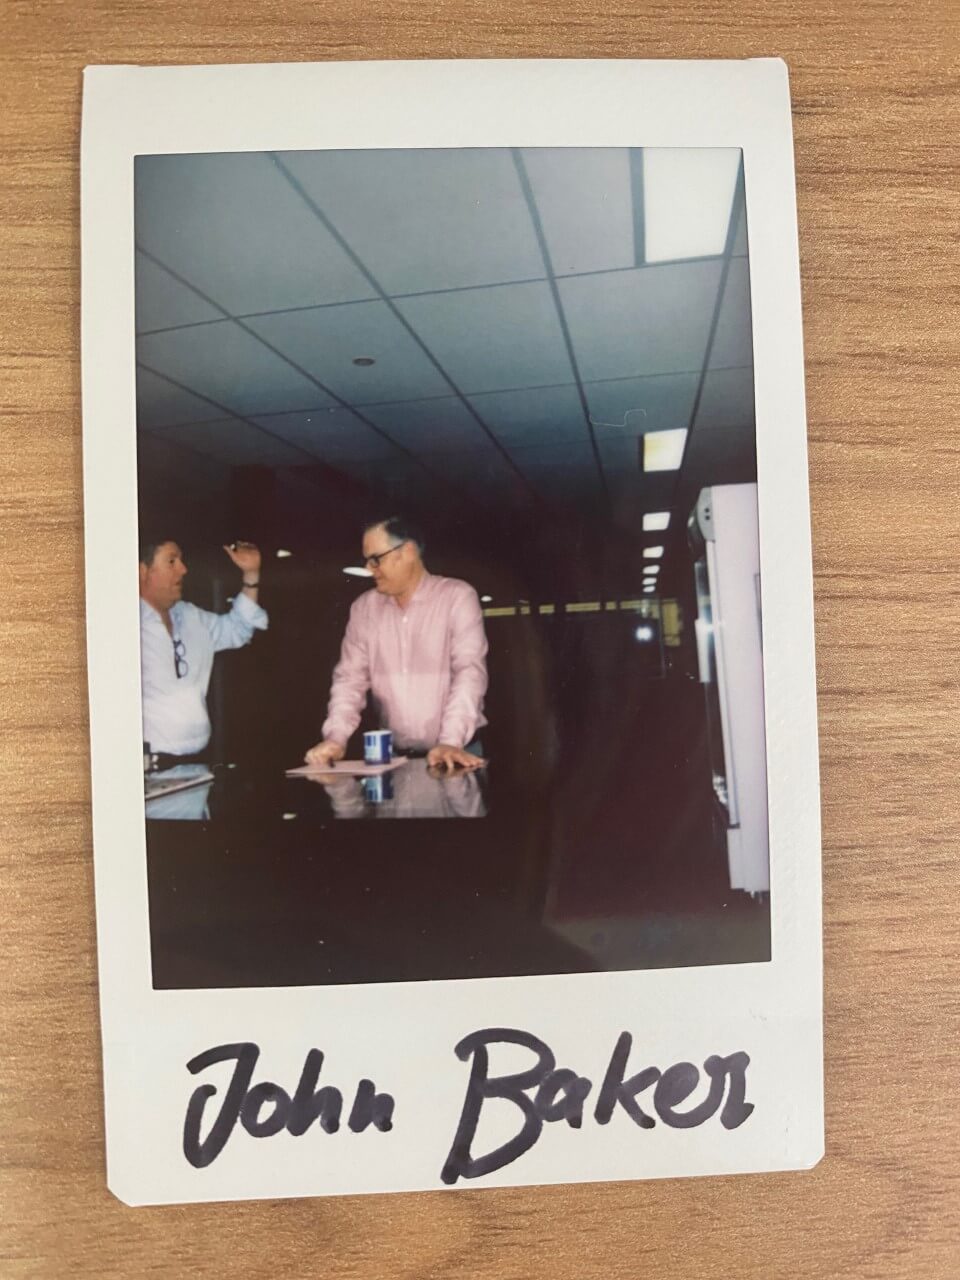 John Baker - Staff polaroid